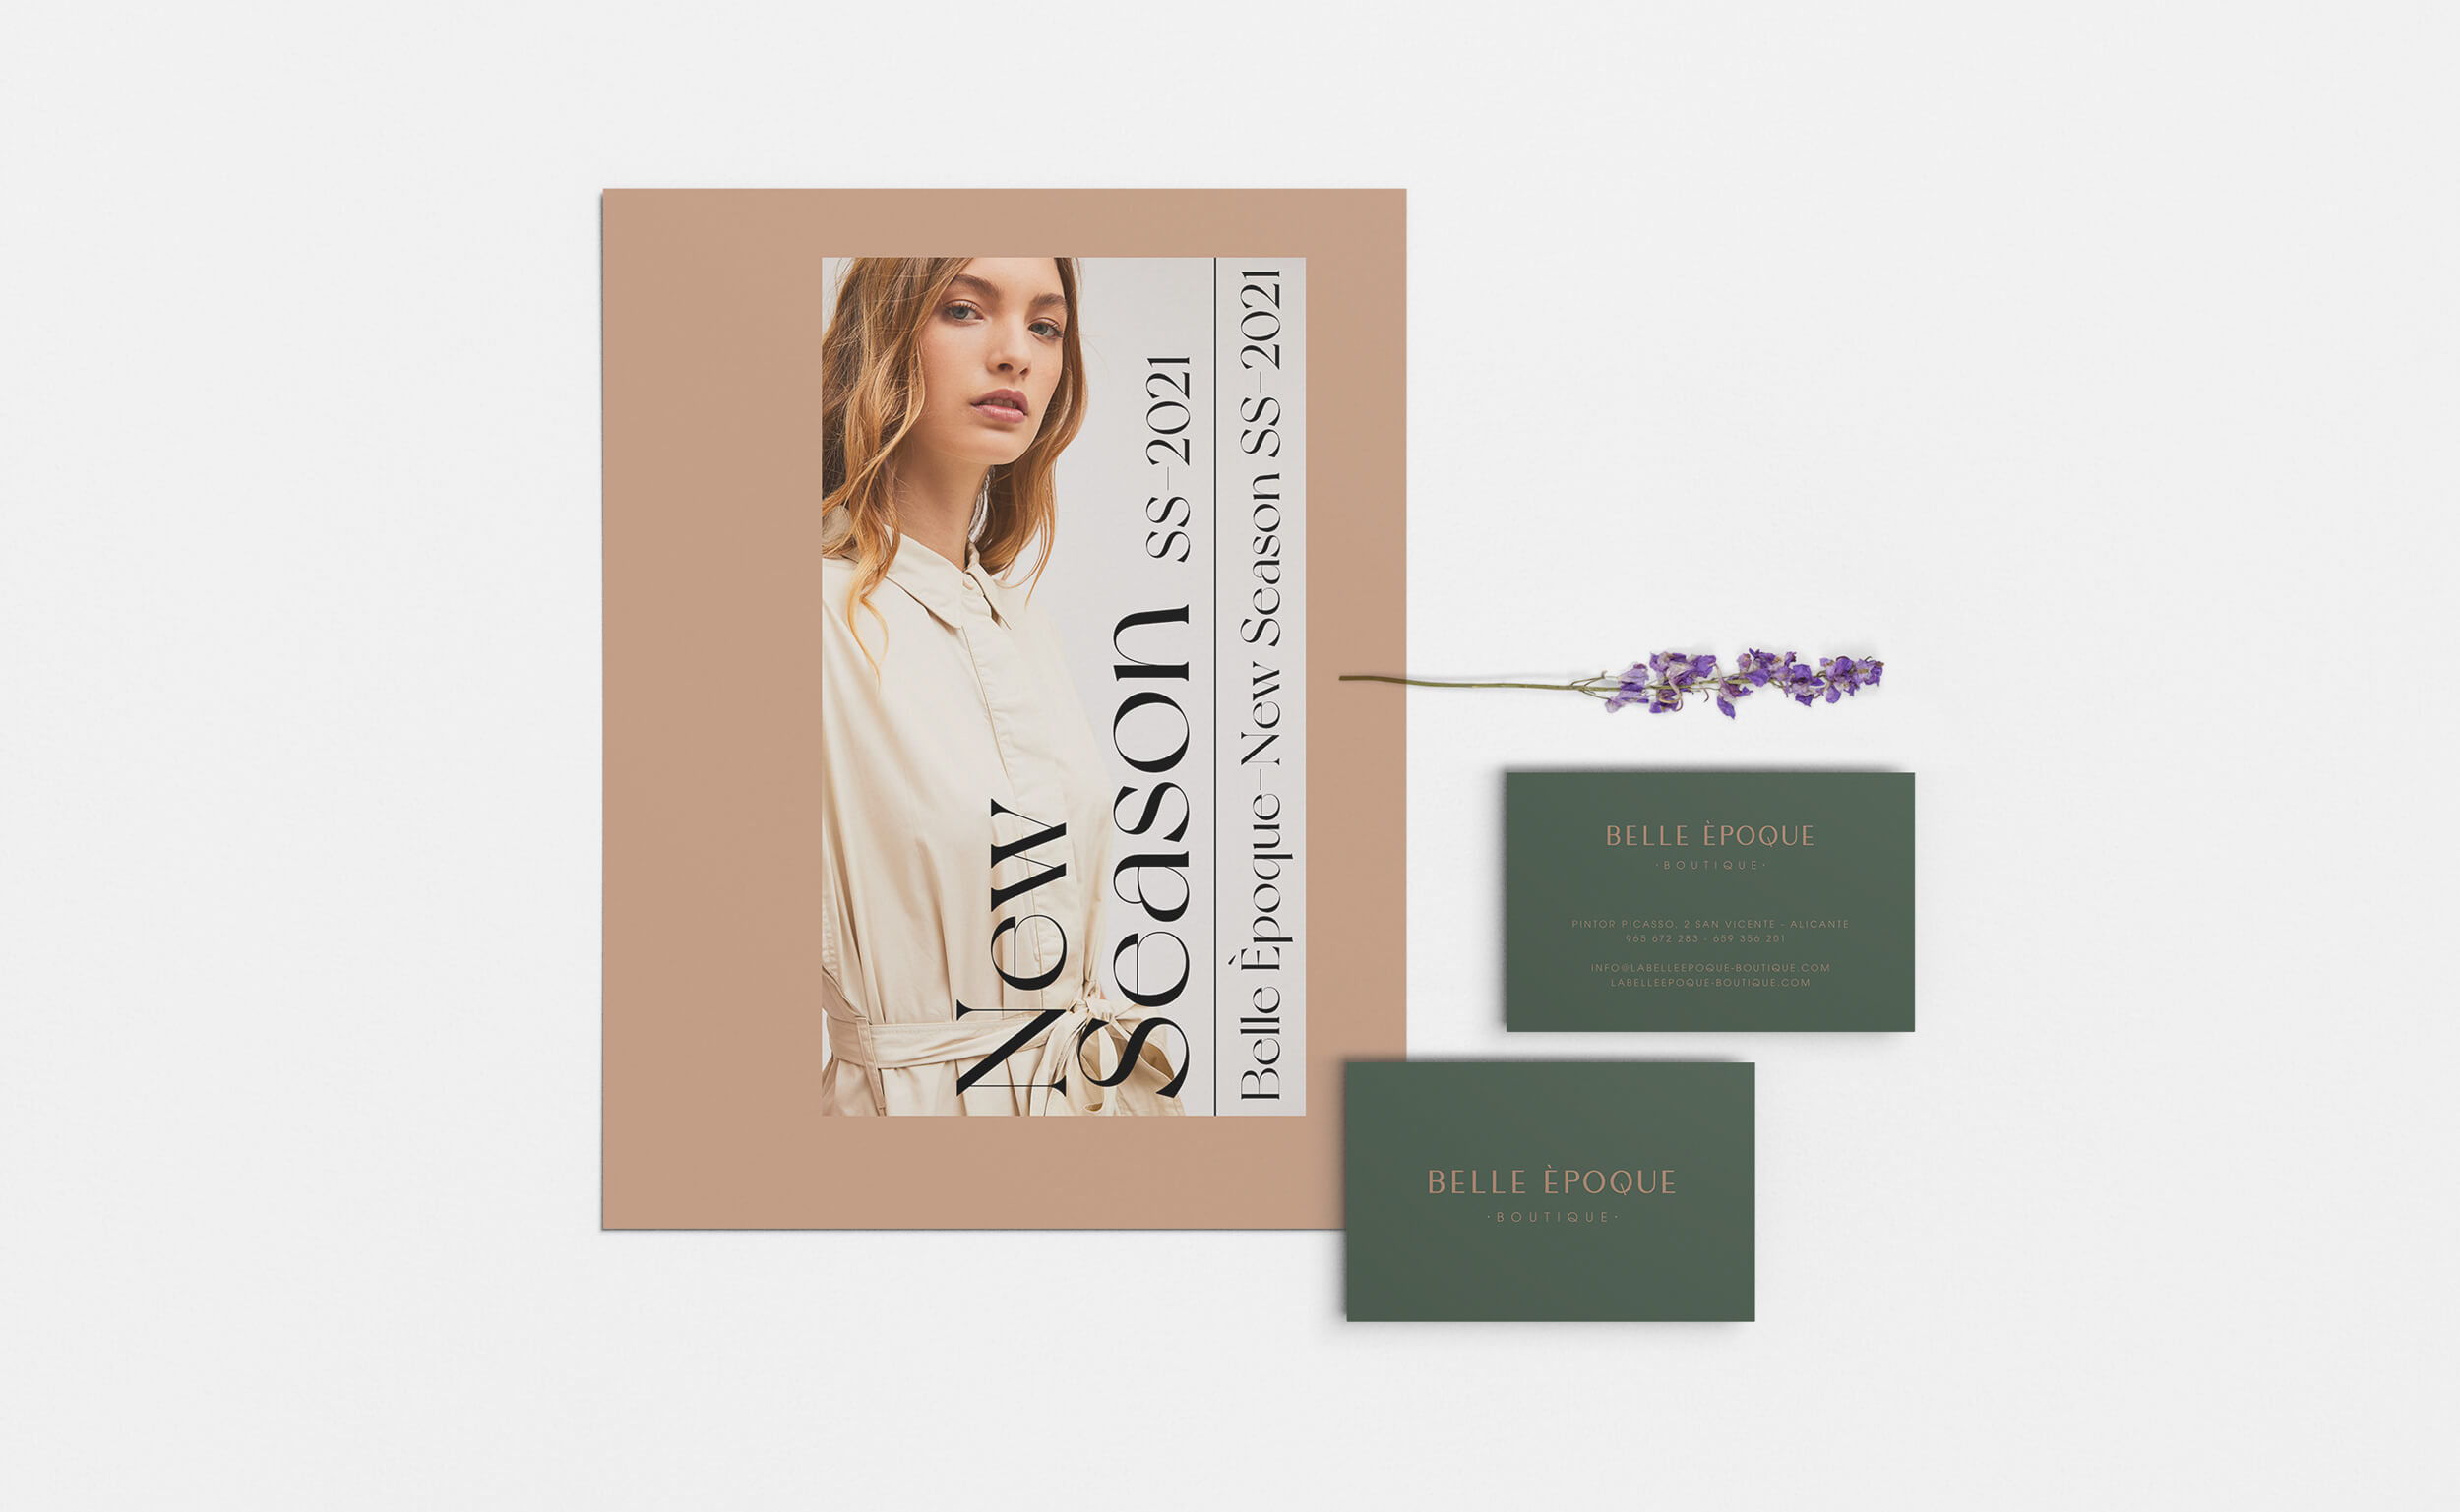 Diseño y desarrollo de identidad visual corporativa para Belle Èpoque. Vista detalle papelería corporativa.